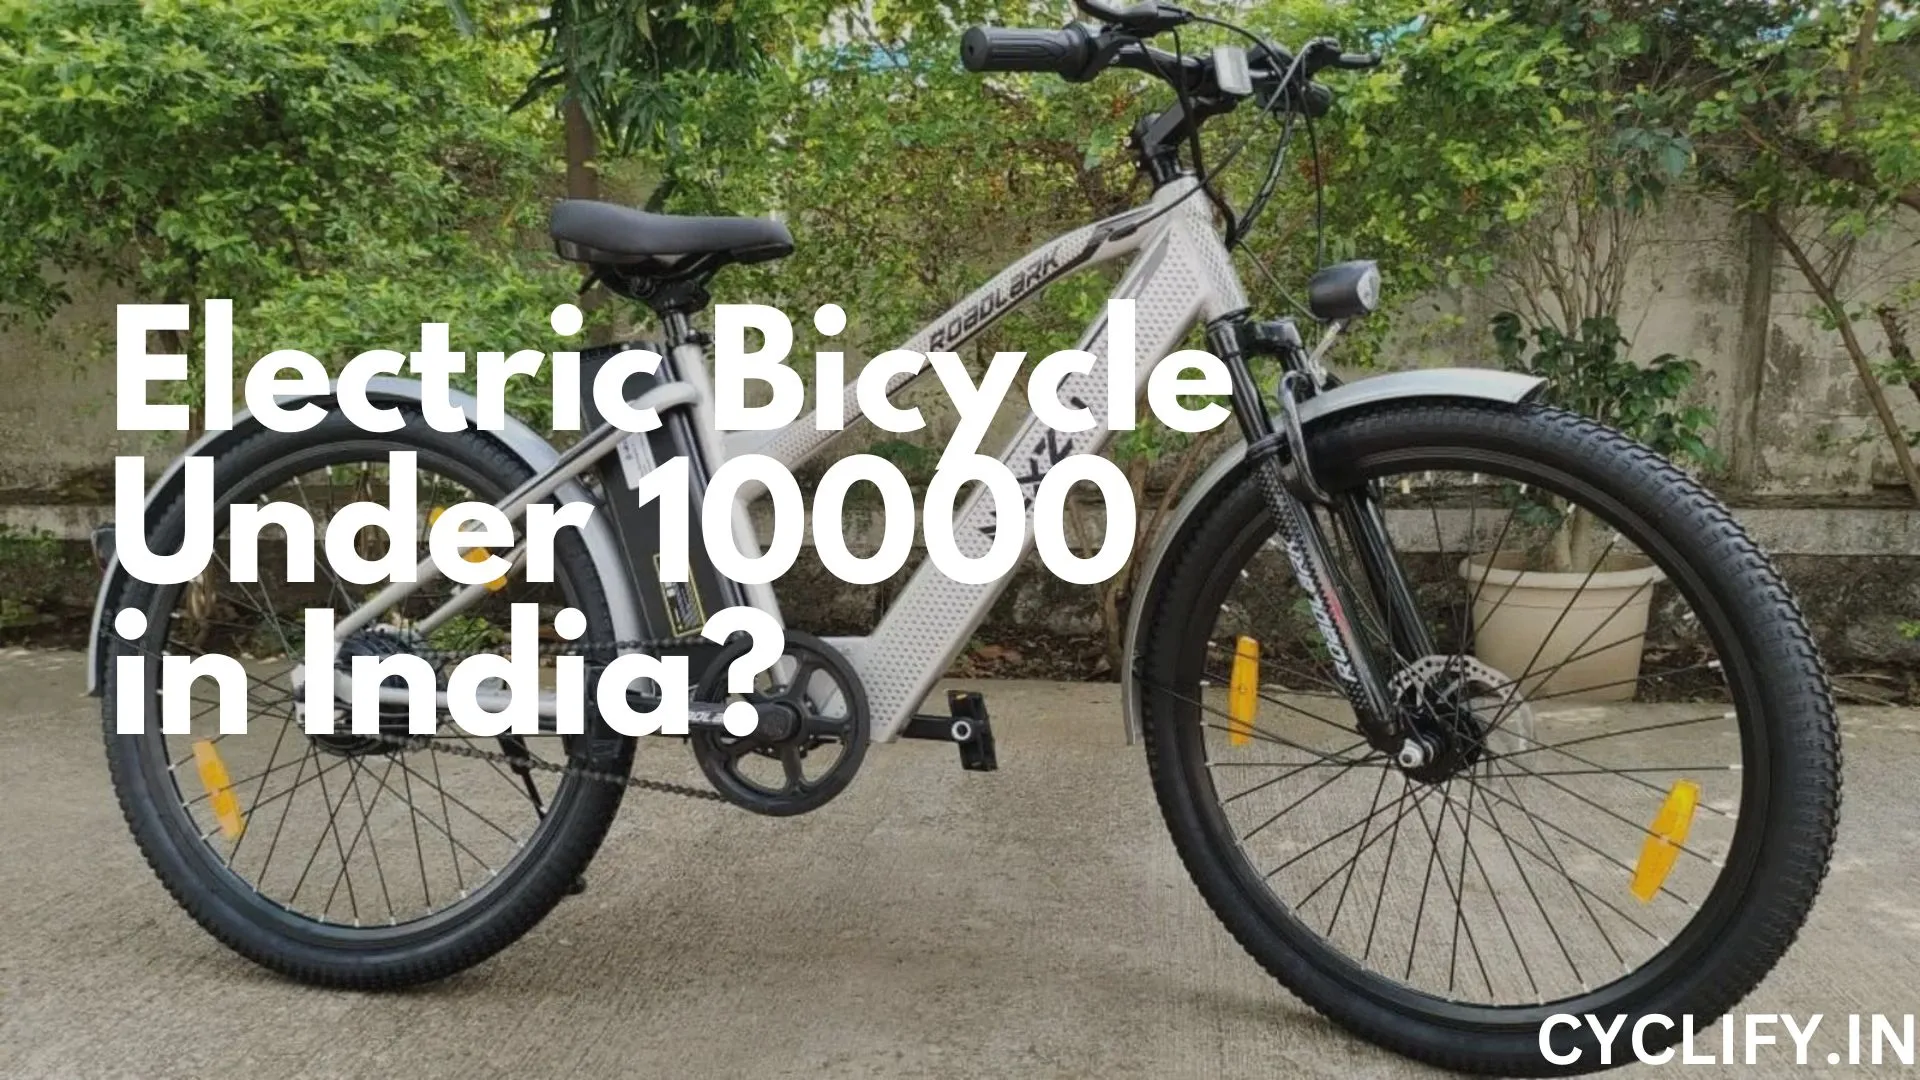 Electric bicycle under 10000 in India - A Gray NEXZU E-bike.